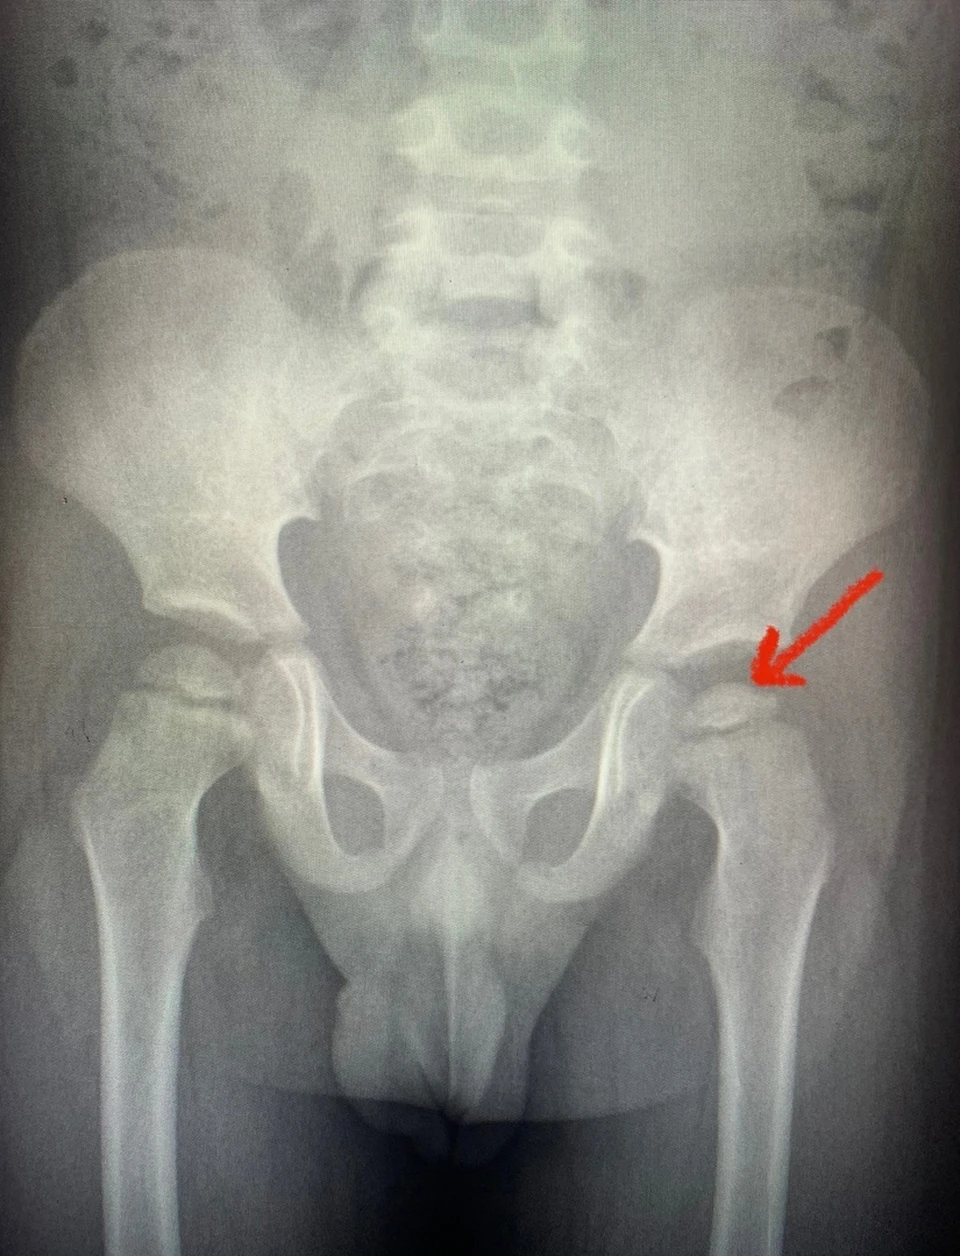 Рентгеновский снимок подтвердил редкую патологию тазобедренного сустава.